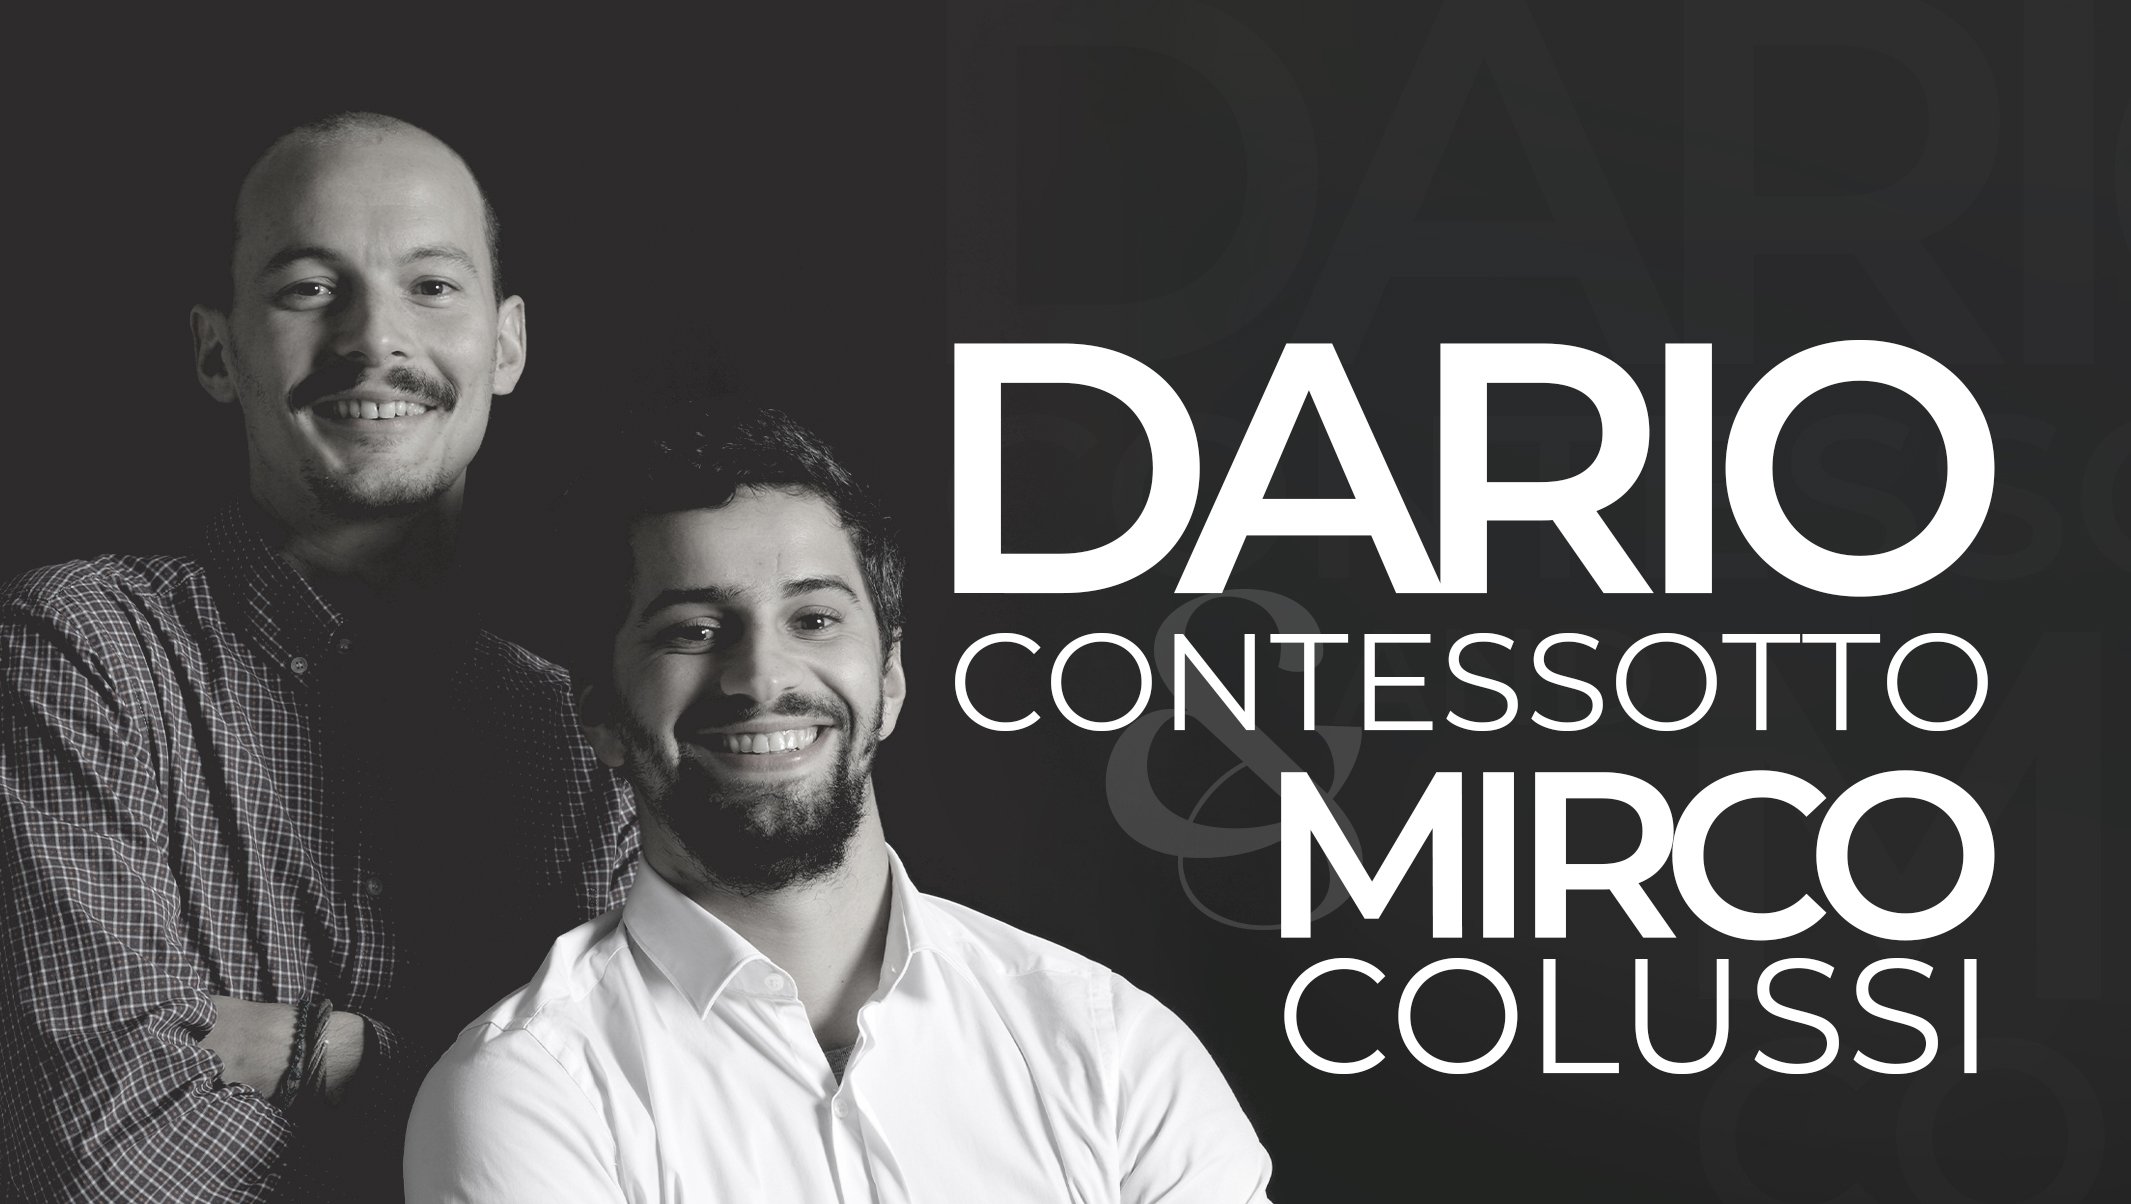 Dario Contessotto and Mirco Colussi designs